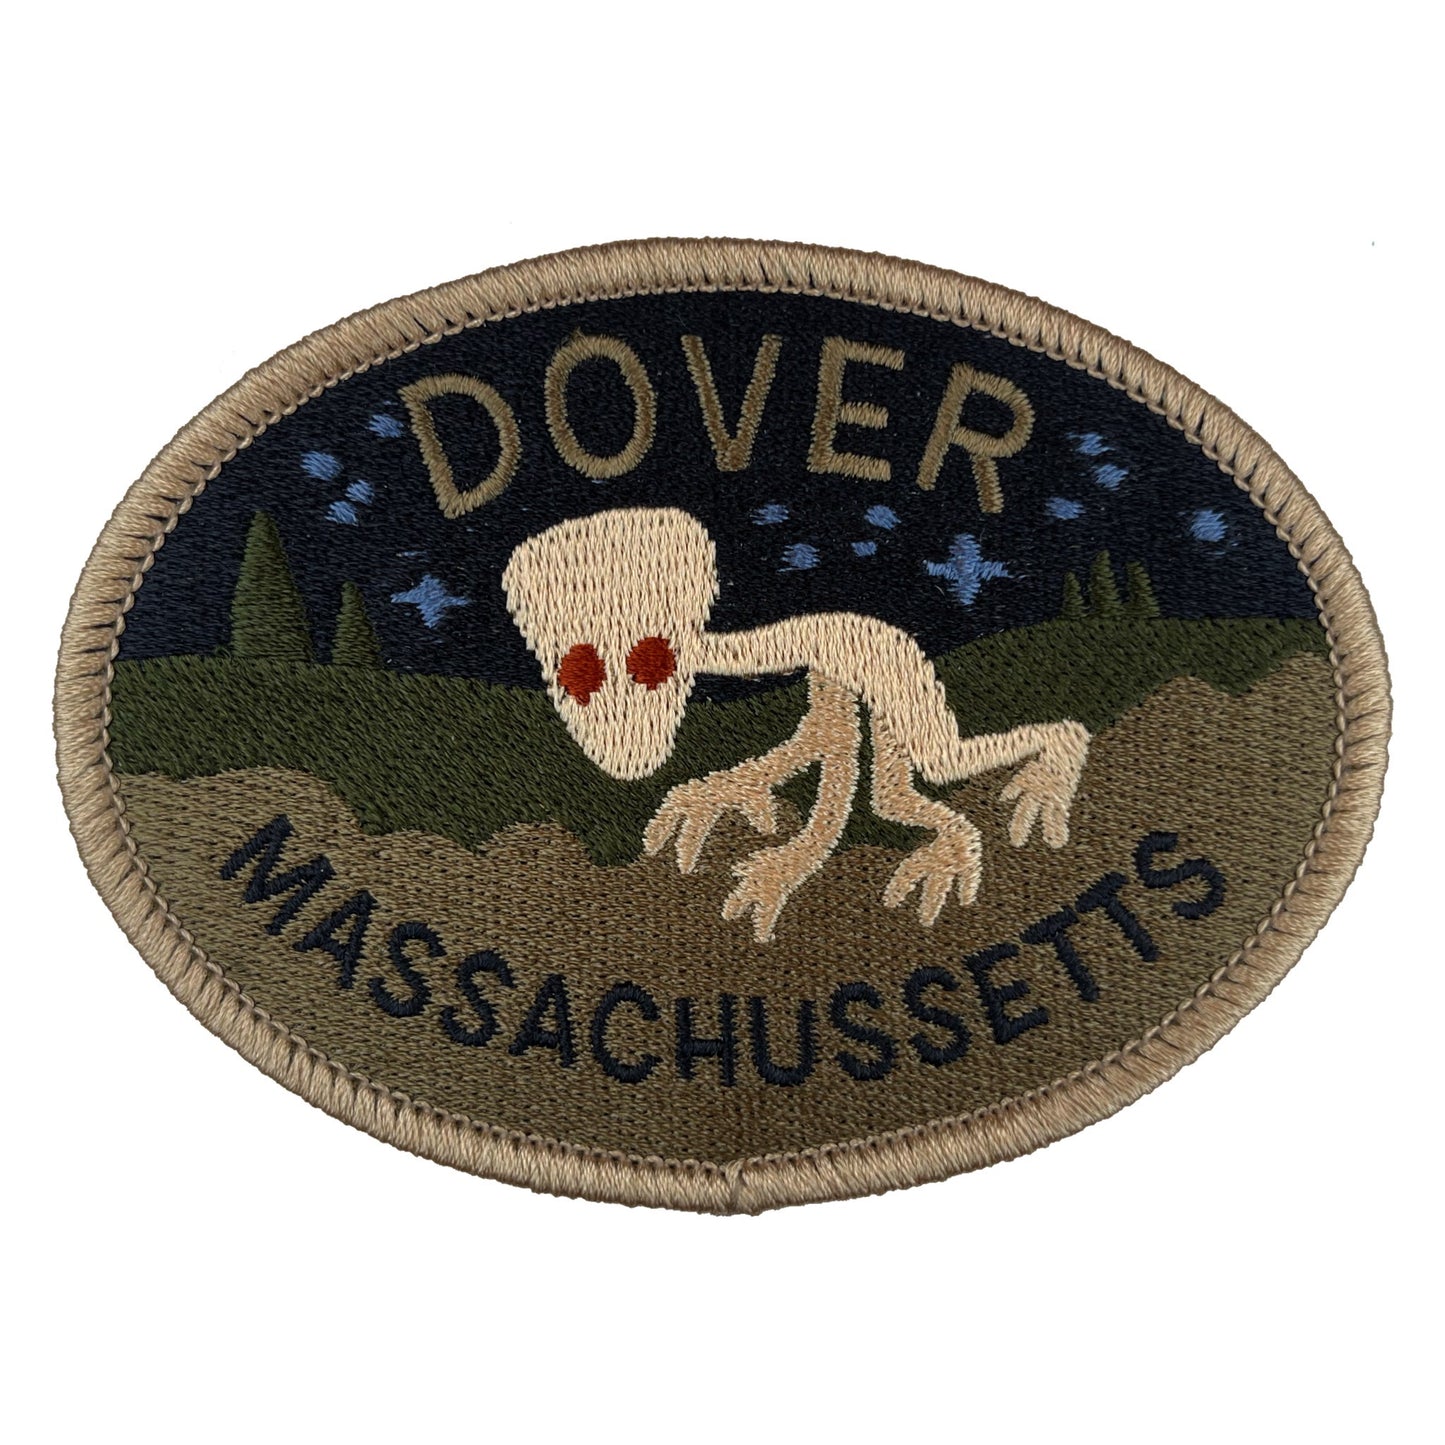 Dover, Massachusetts Travel Patch